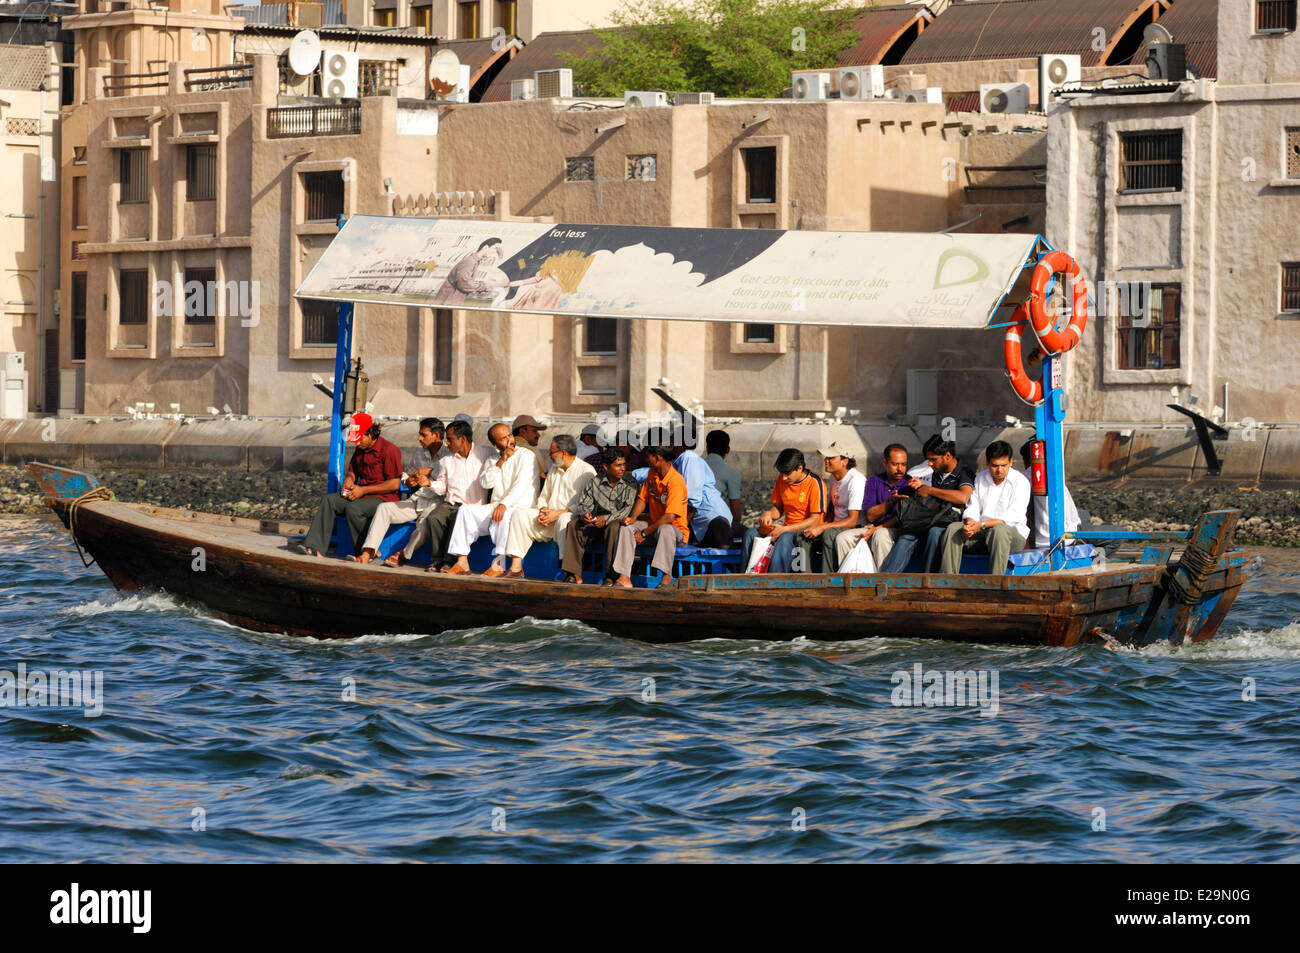 Emirats arabes unis, dubaï, Dubaï, l'émirat un abra, bateau à passagers traditionnels sur la Crique de Dubaï bras de mer Banque D'Images